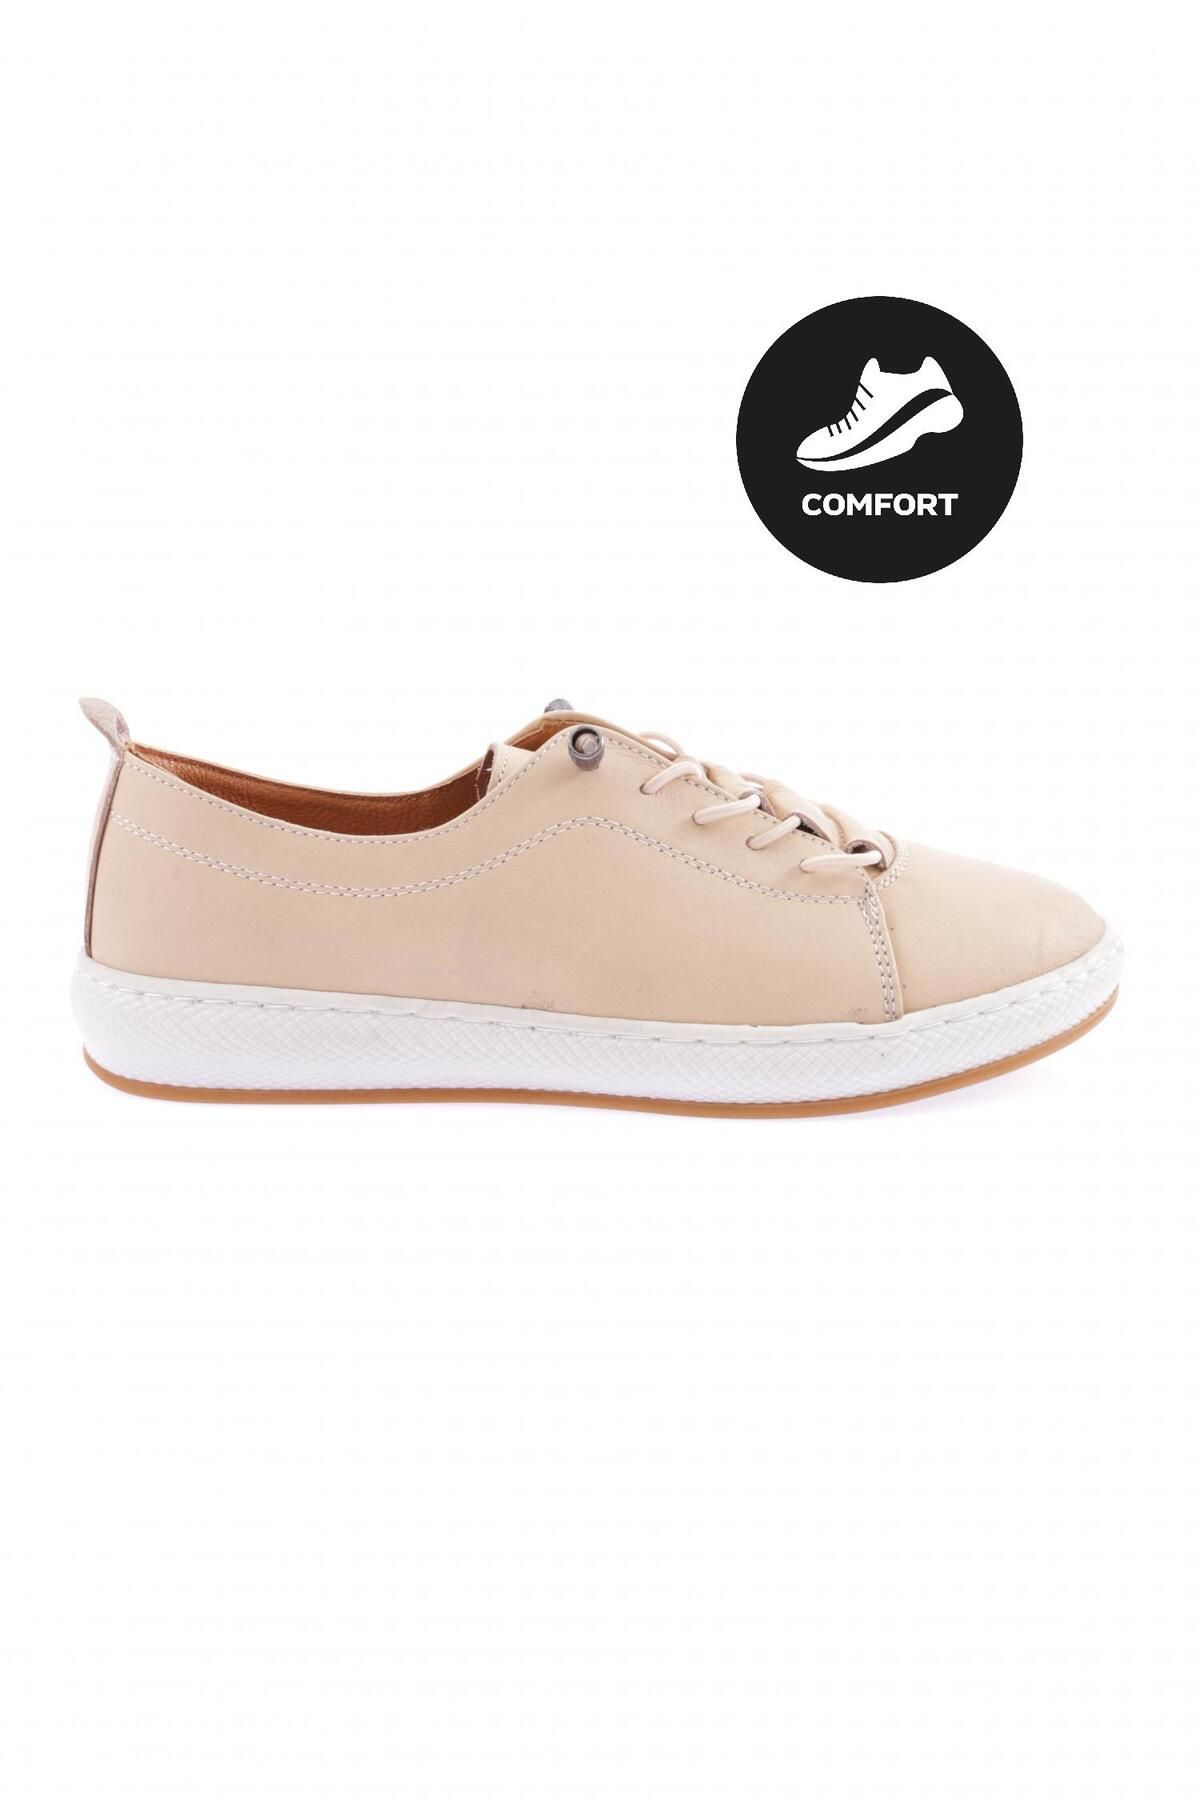 Dgn 1020-22y Kadın Bağcıklı Comfort Ayakkabı